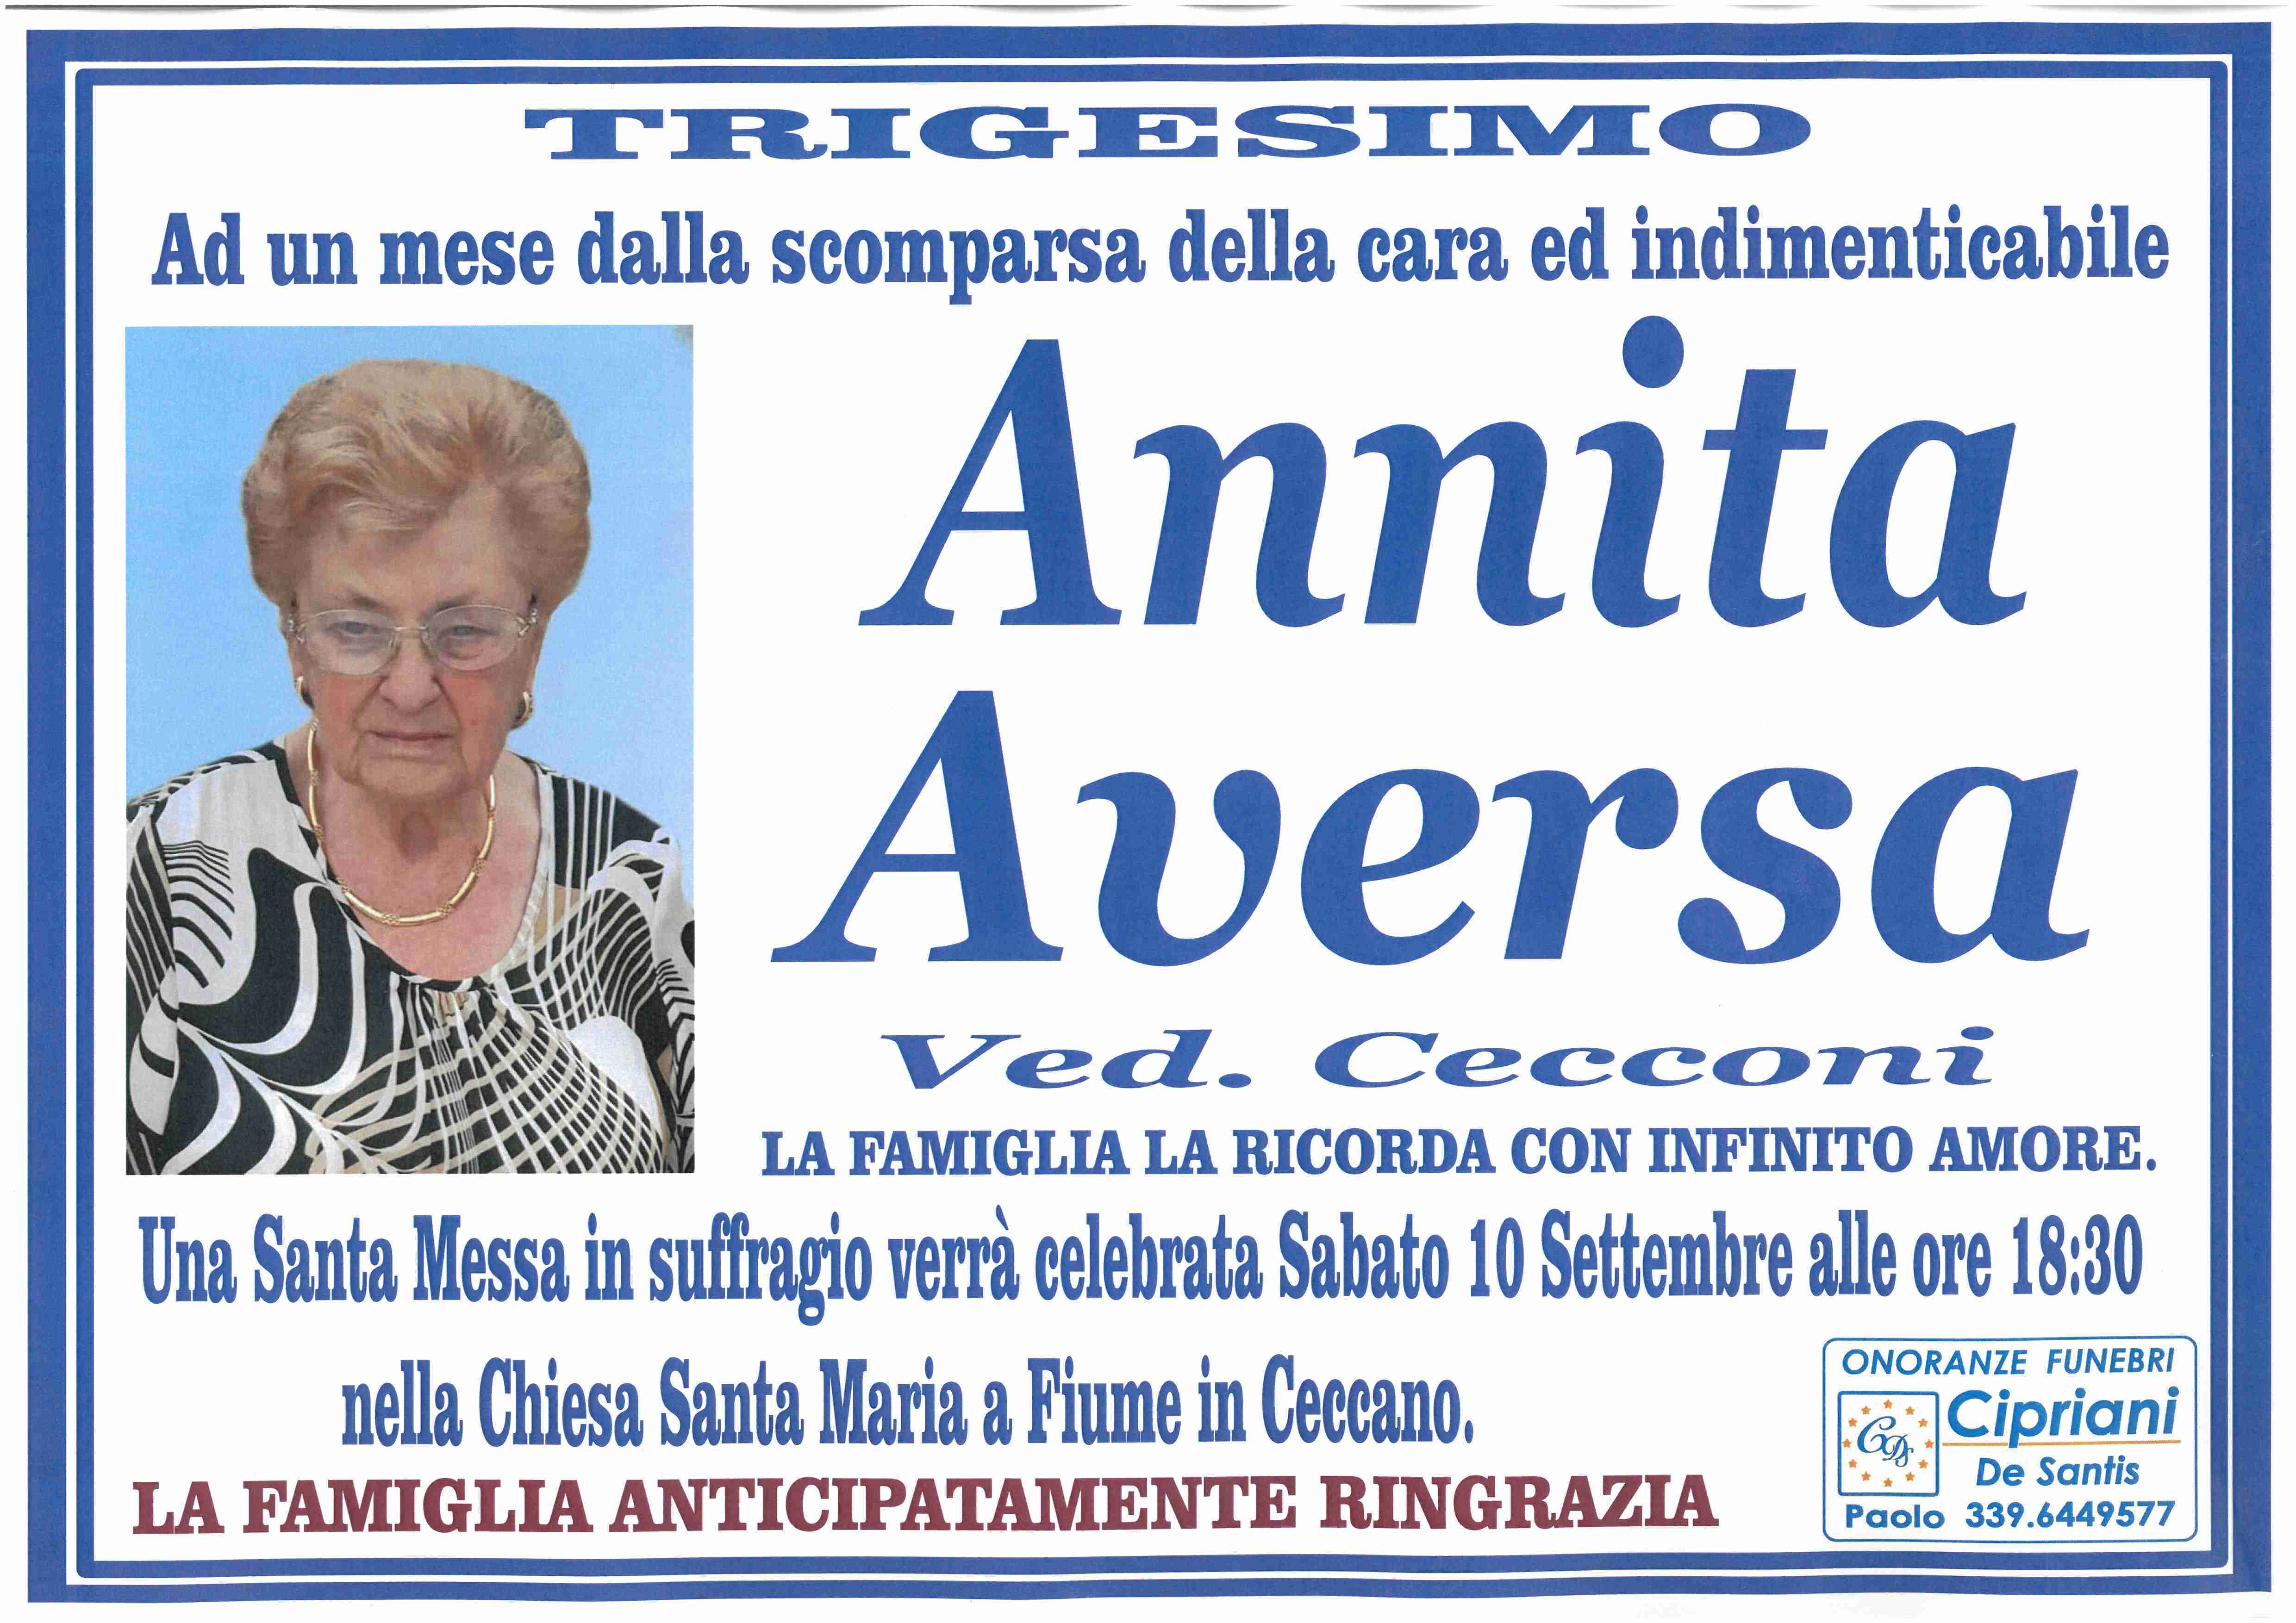 Annita Aversa